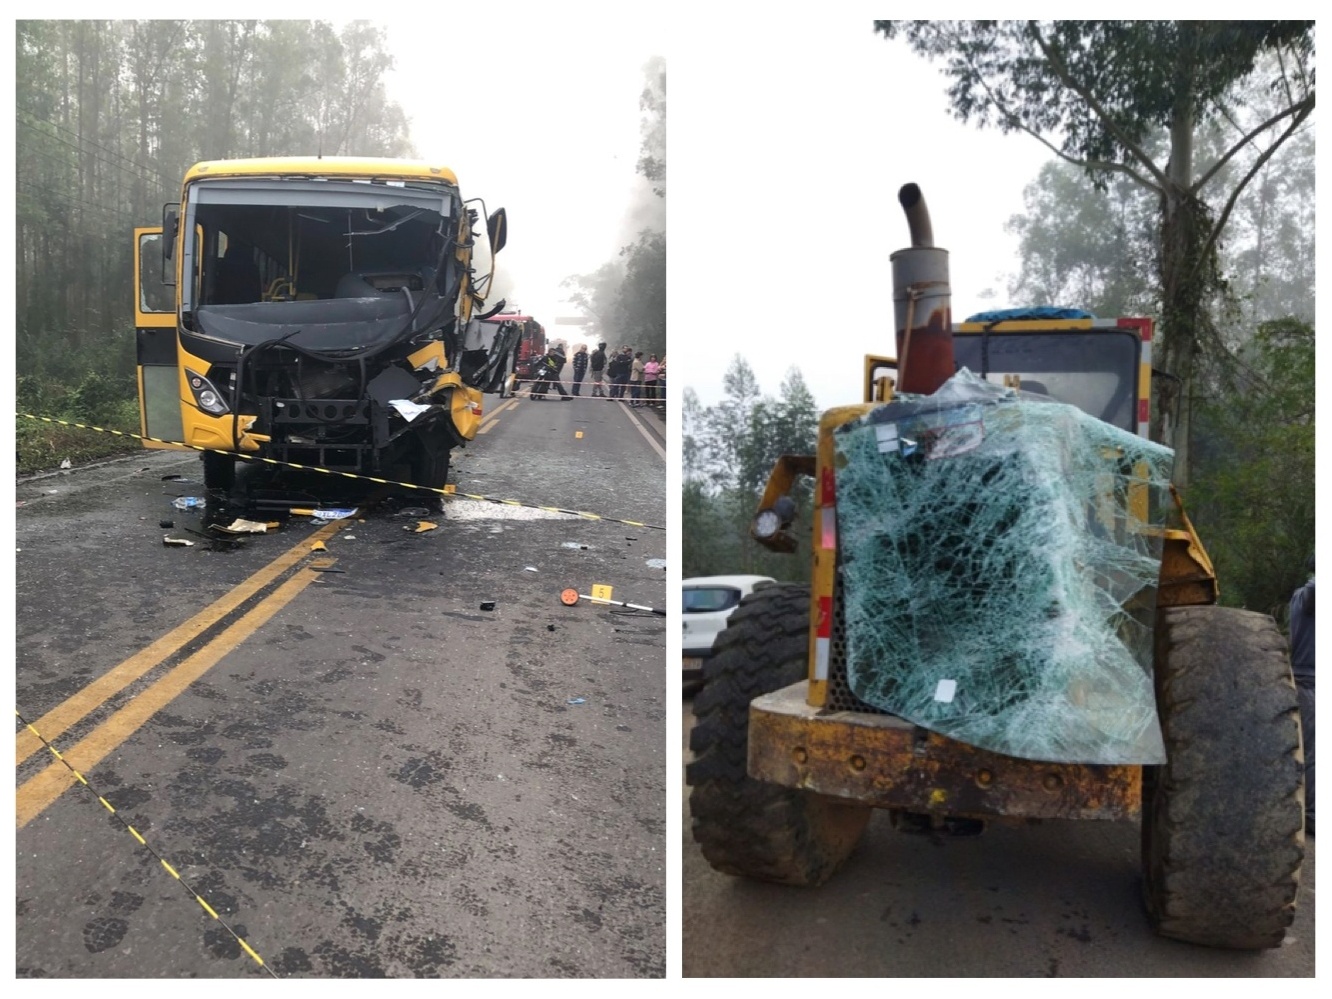 Motorista de ônibus escolar bate em carreta e fica gravemente